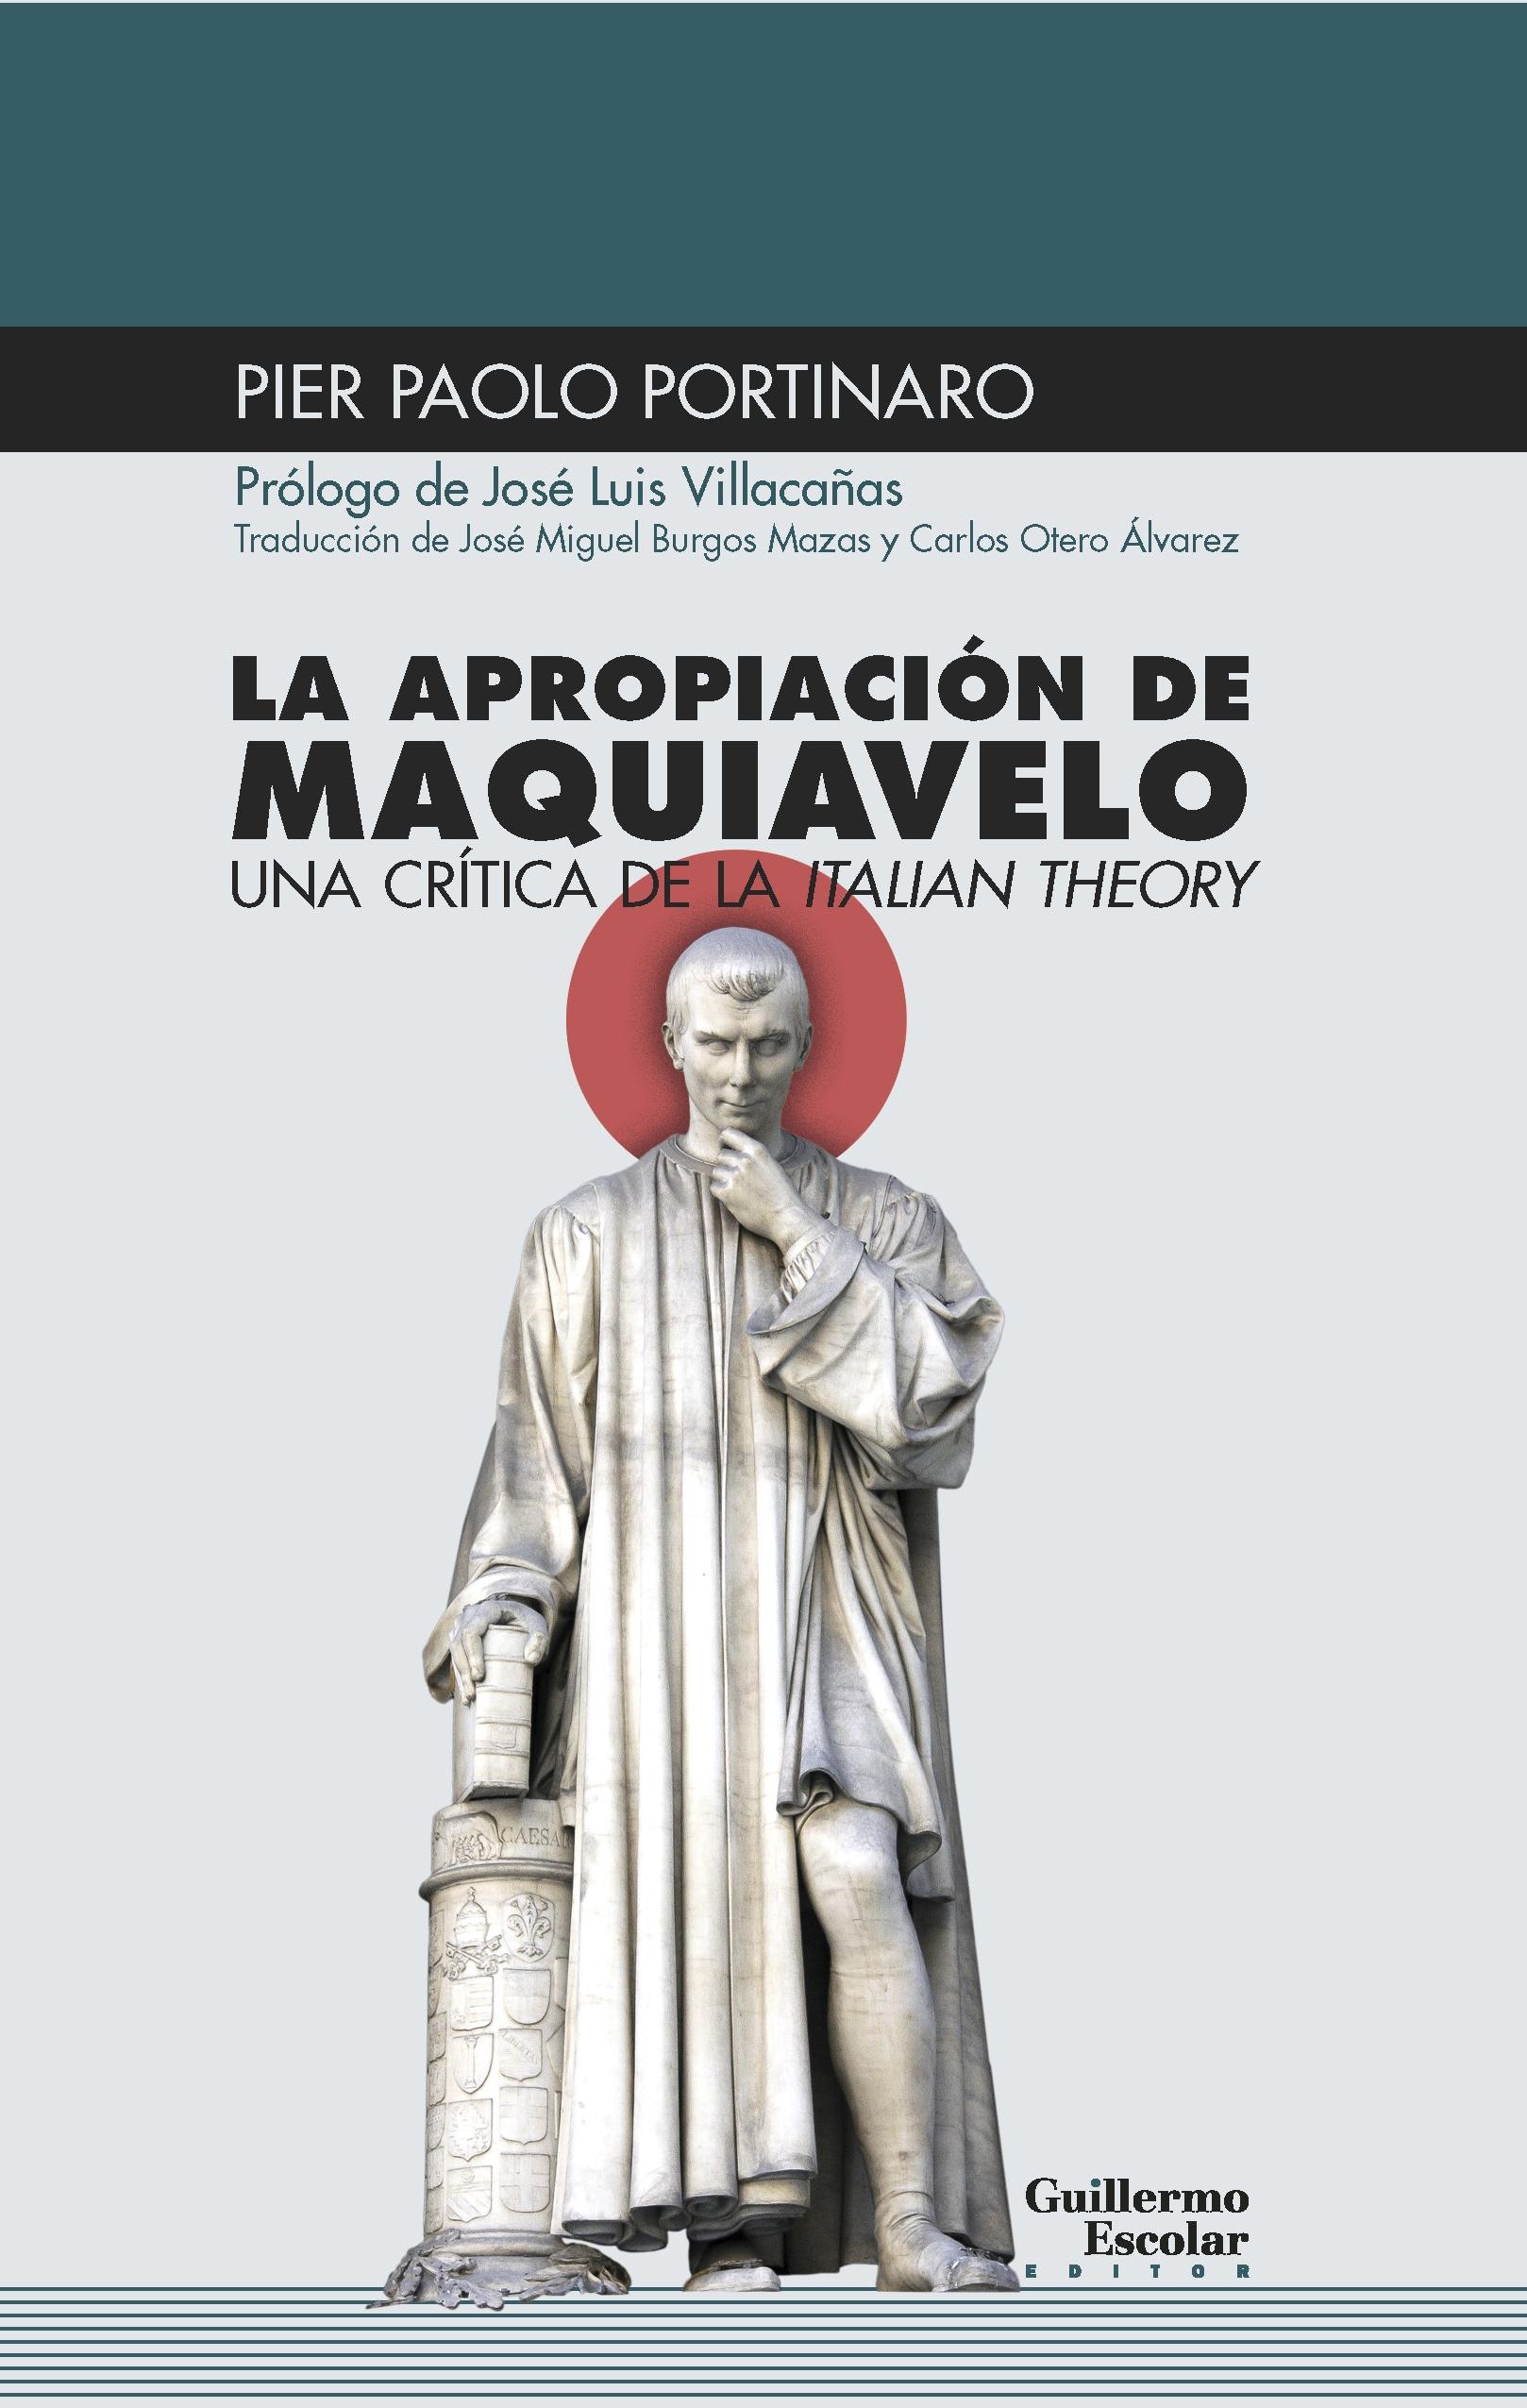 La apropiación de Maquiavelo "Una crítica de la 'Italian Theory'". 